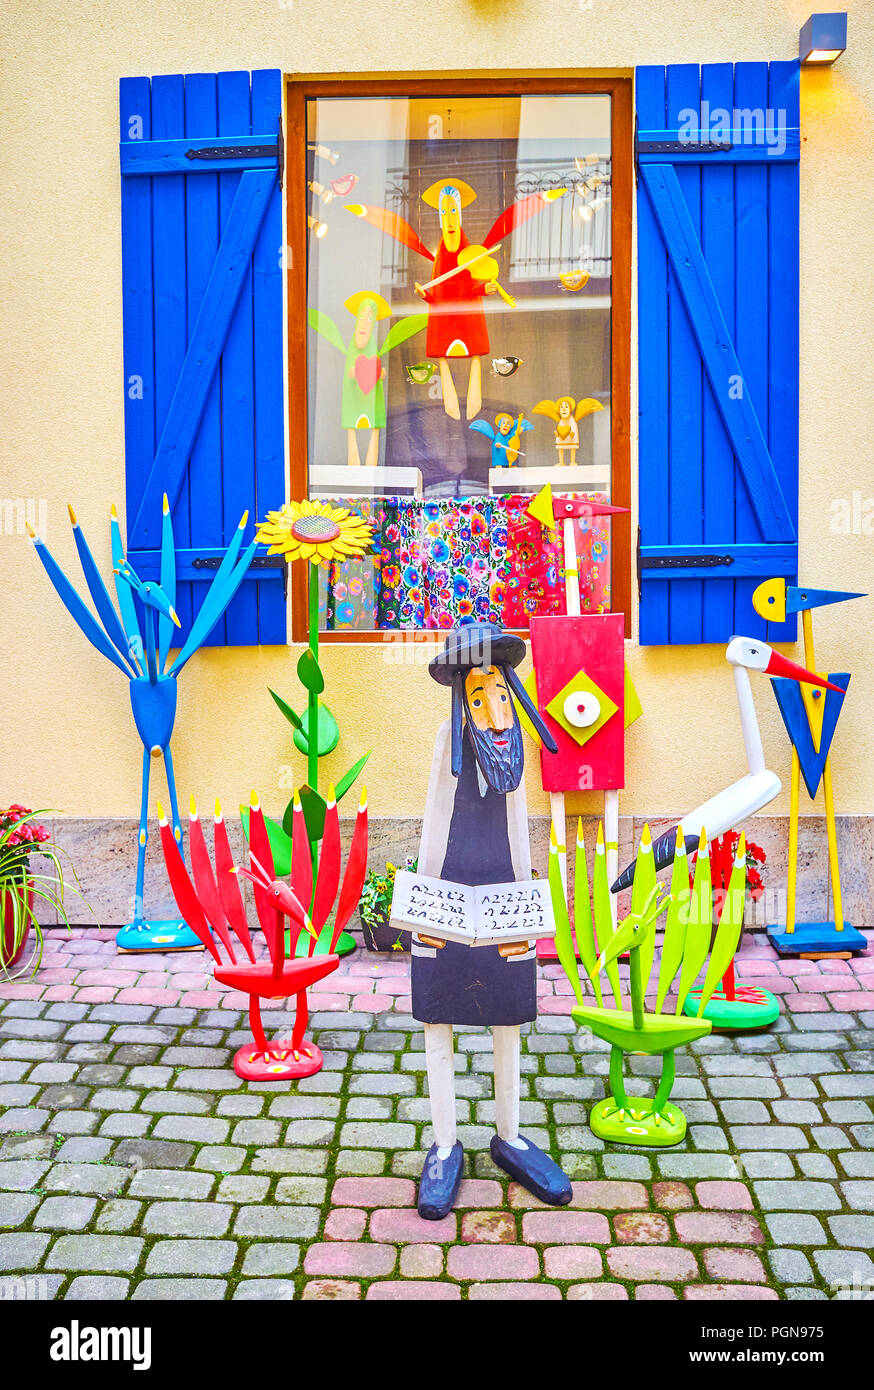 Die handgefertigten Holzmöbeln Statuette in Form von jungen hasid lesen Thora, mit verschiedenen anderen Holzspielzeug in Kazimierz in Krakau, Polen, umgeben Stockfoto